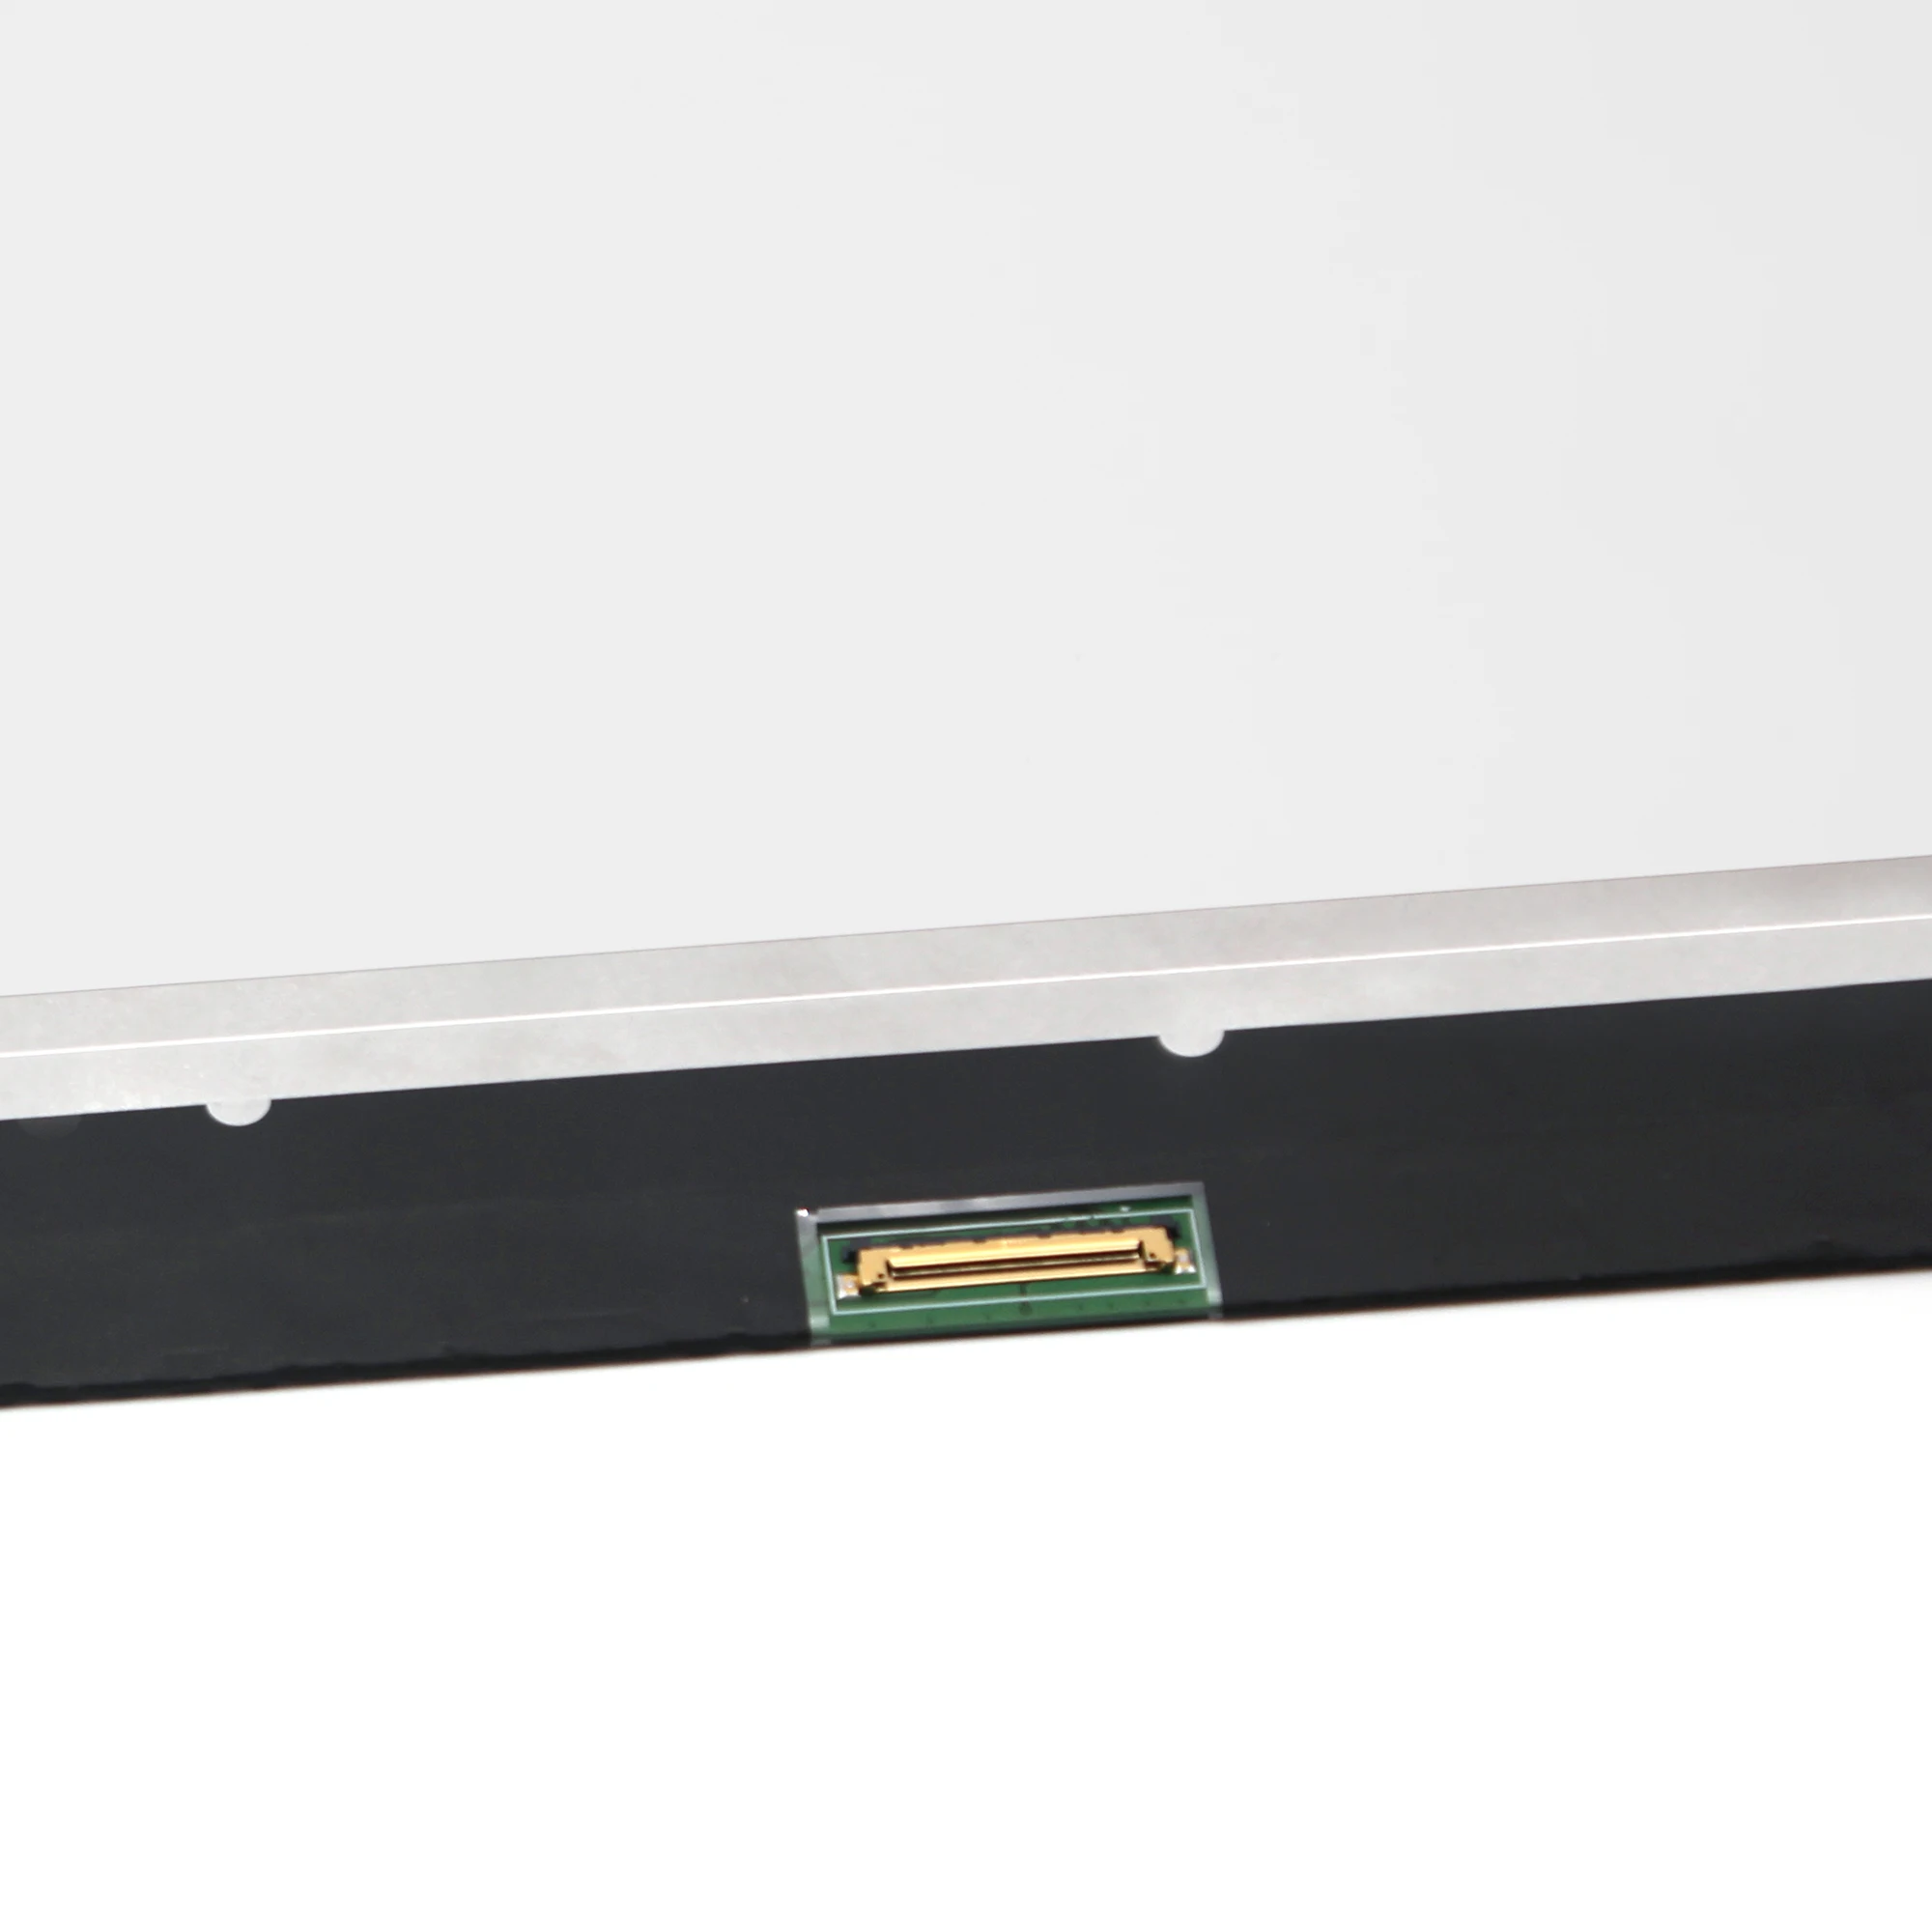 1" светодиодный ЖК-экран панель запасная часть N140BGA-EA4 Rev C2 5D10M42863 1366x768